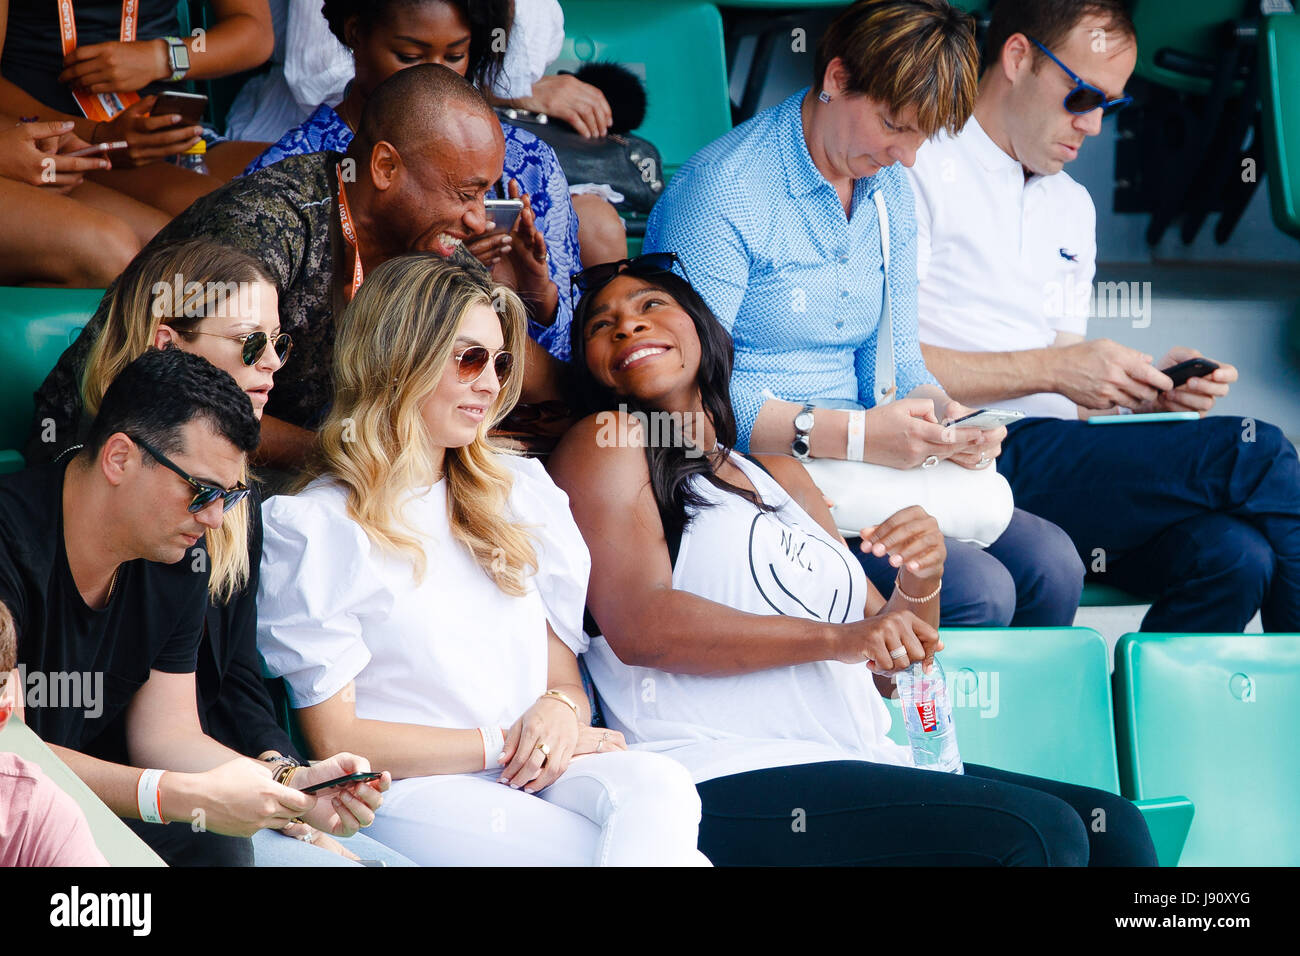 Paris, France, 31 mai 2017 : Serena Williams sourit pendant ses sœurs deuxième tour à l'Open de France de tennis 2017 à Roland Garros Paris. crédit : Frank molter/Alamy live news Banque D'Images